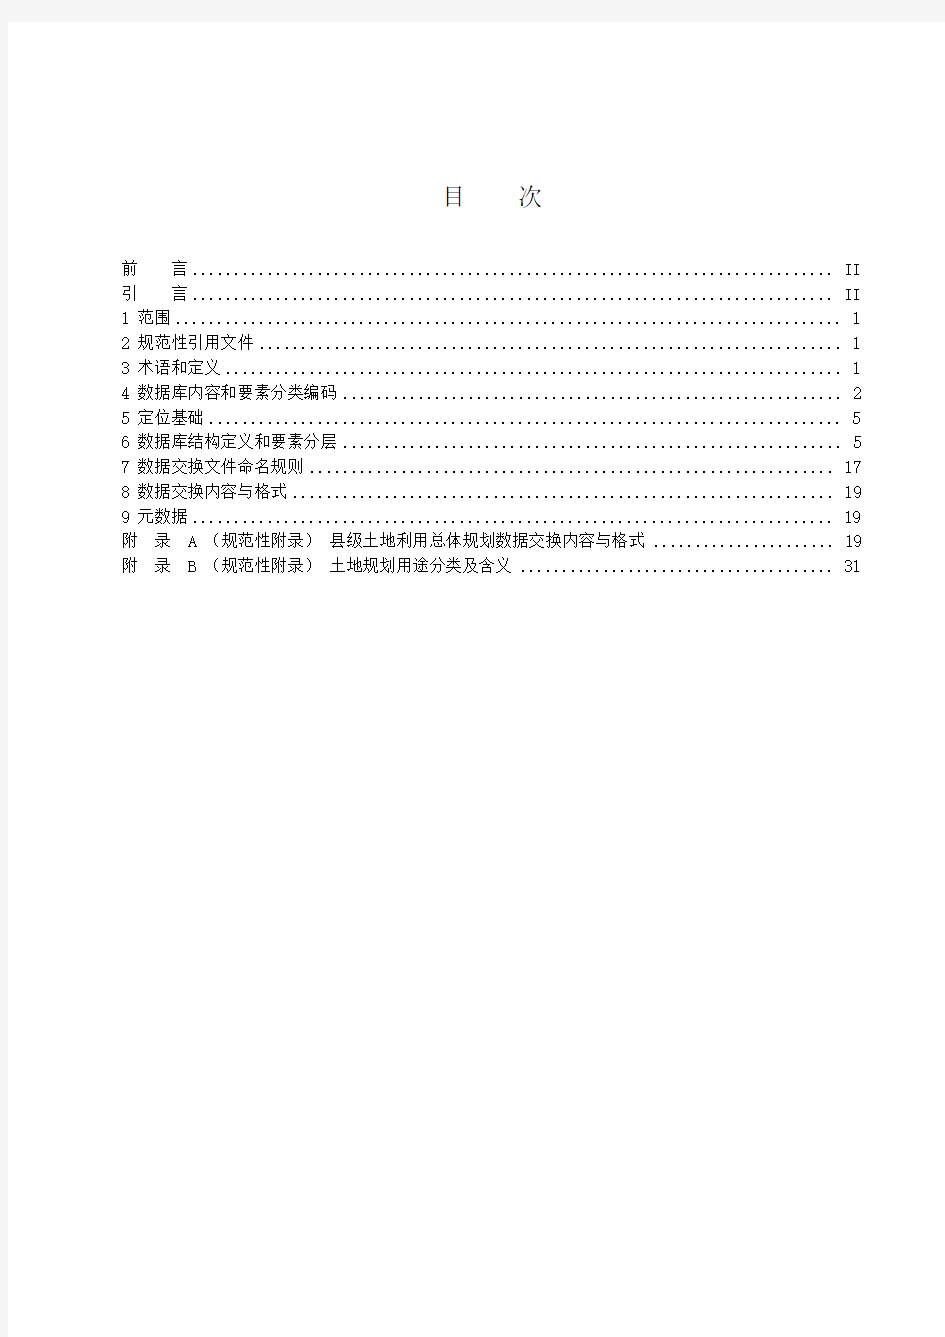 江苏县土地利用总体规划数据库标准